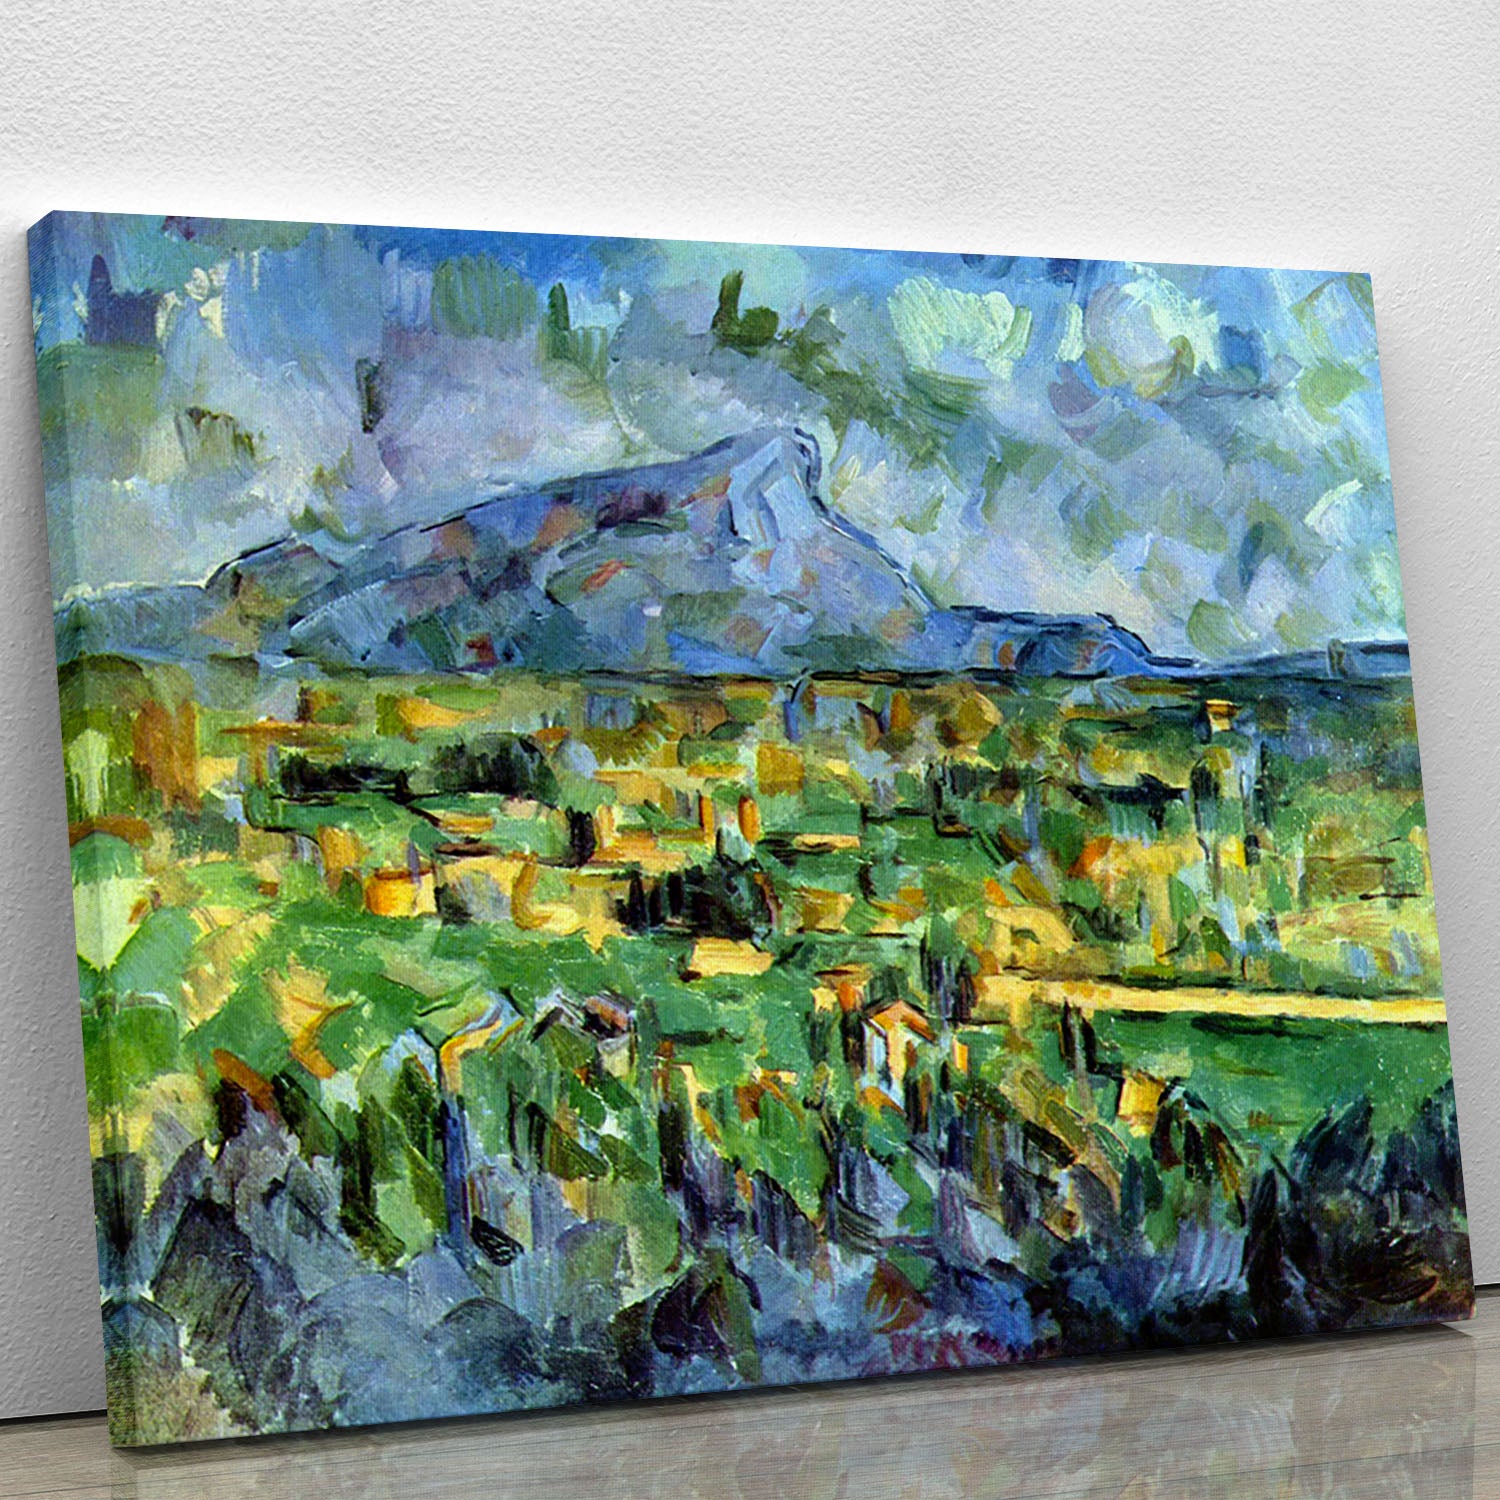 Mont Sainte-Victoire by Cezanne Canvas Print or Poster - Canvas Art Rocks - 1